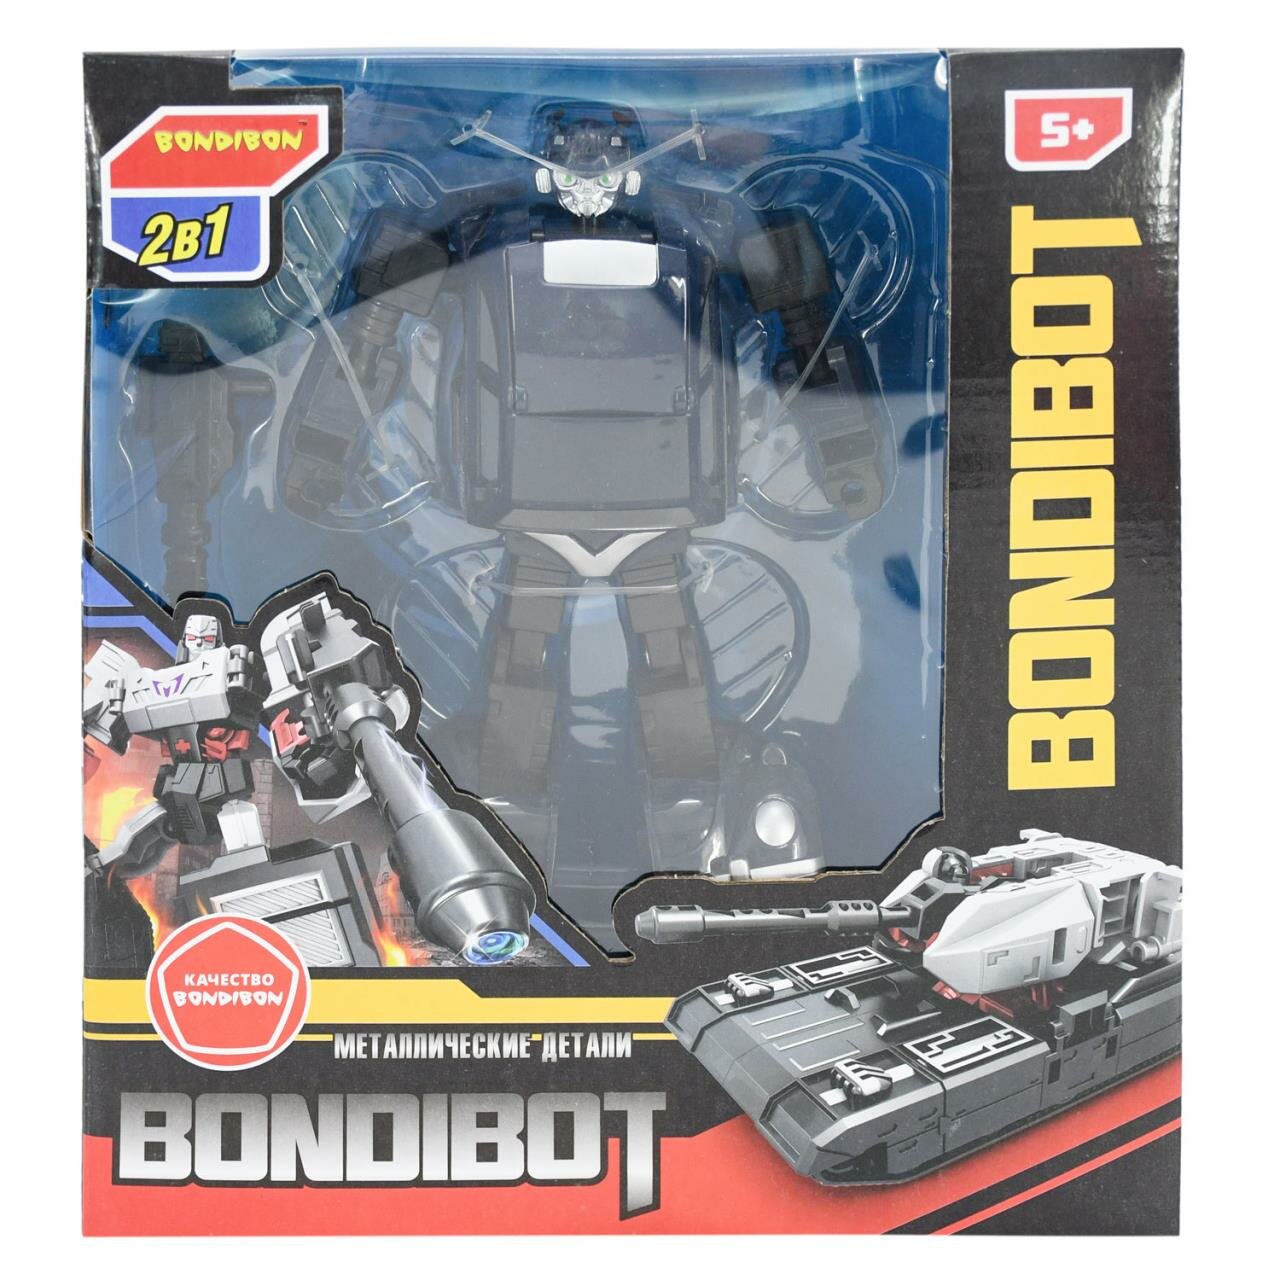 Трансформер 2в1 BONDIBOT Bondibon, ВОХ 24x27,8x10 см, метал. детали, робот-полицейская машина, арт.